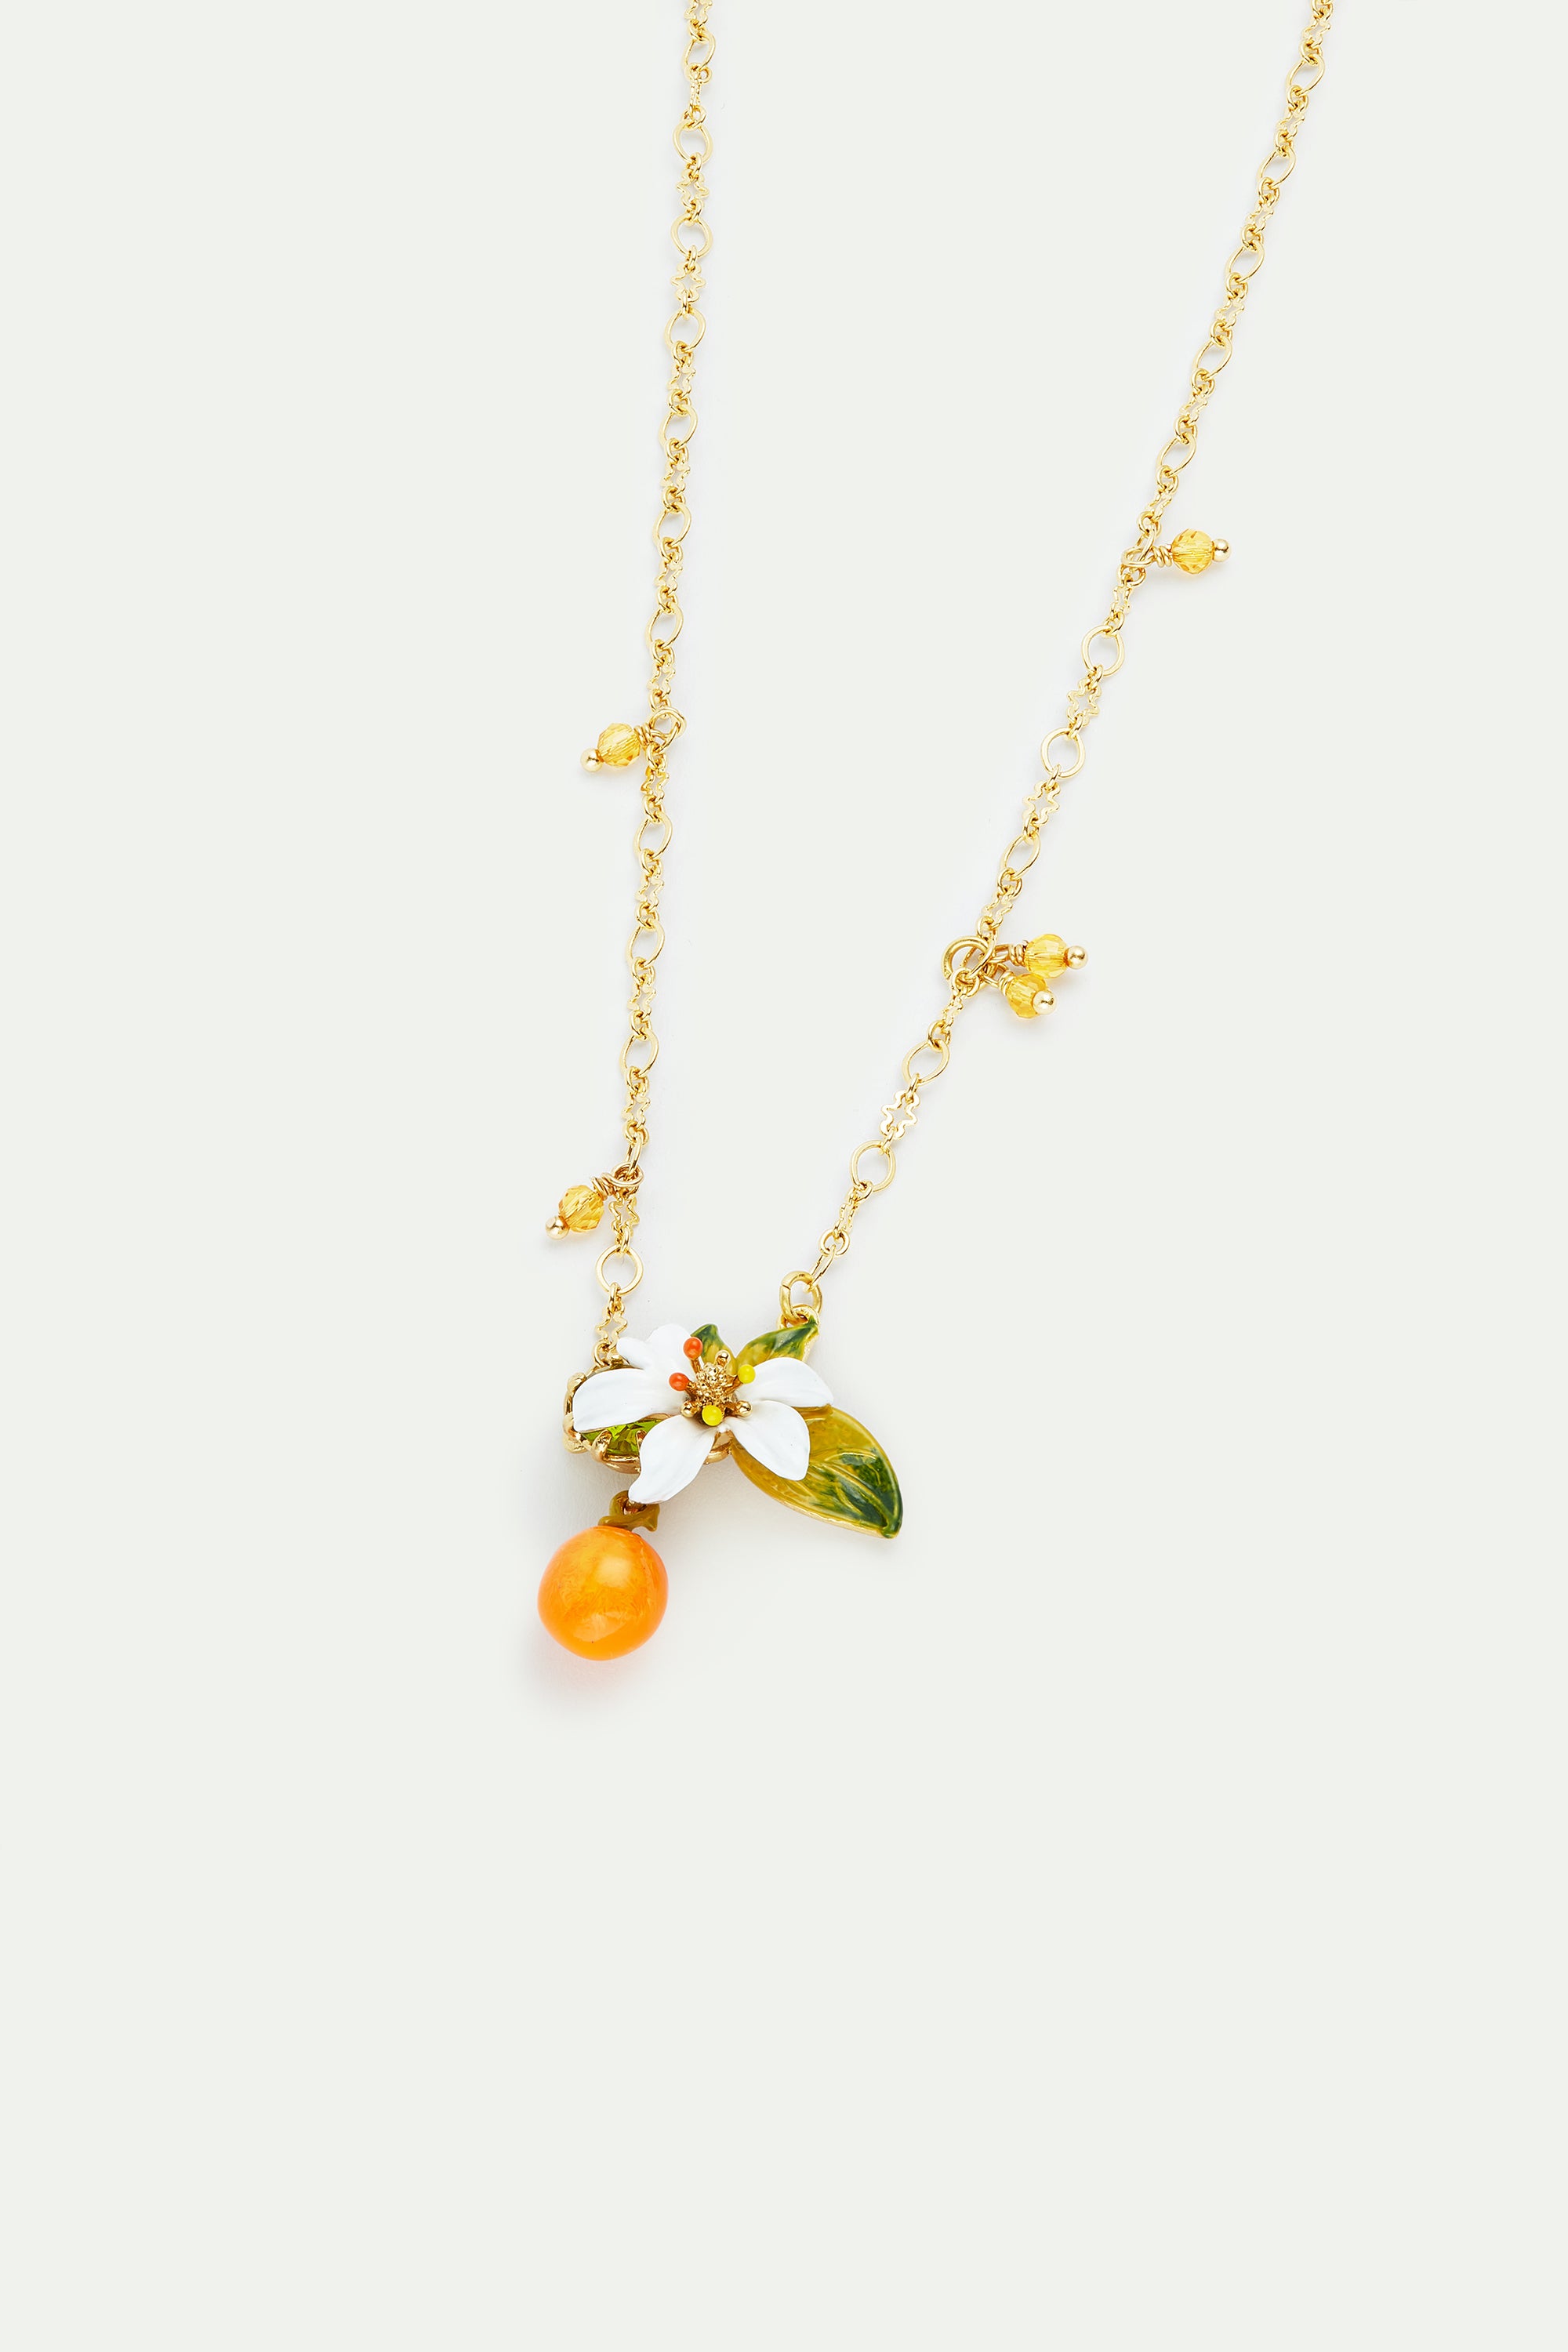 Collier pendentif orange, fleur d'oranger et petites perles